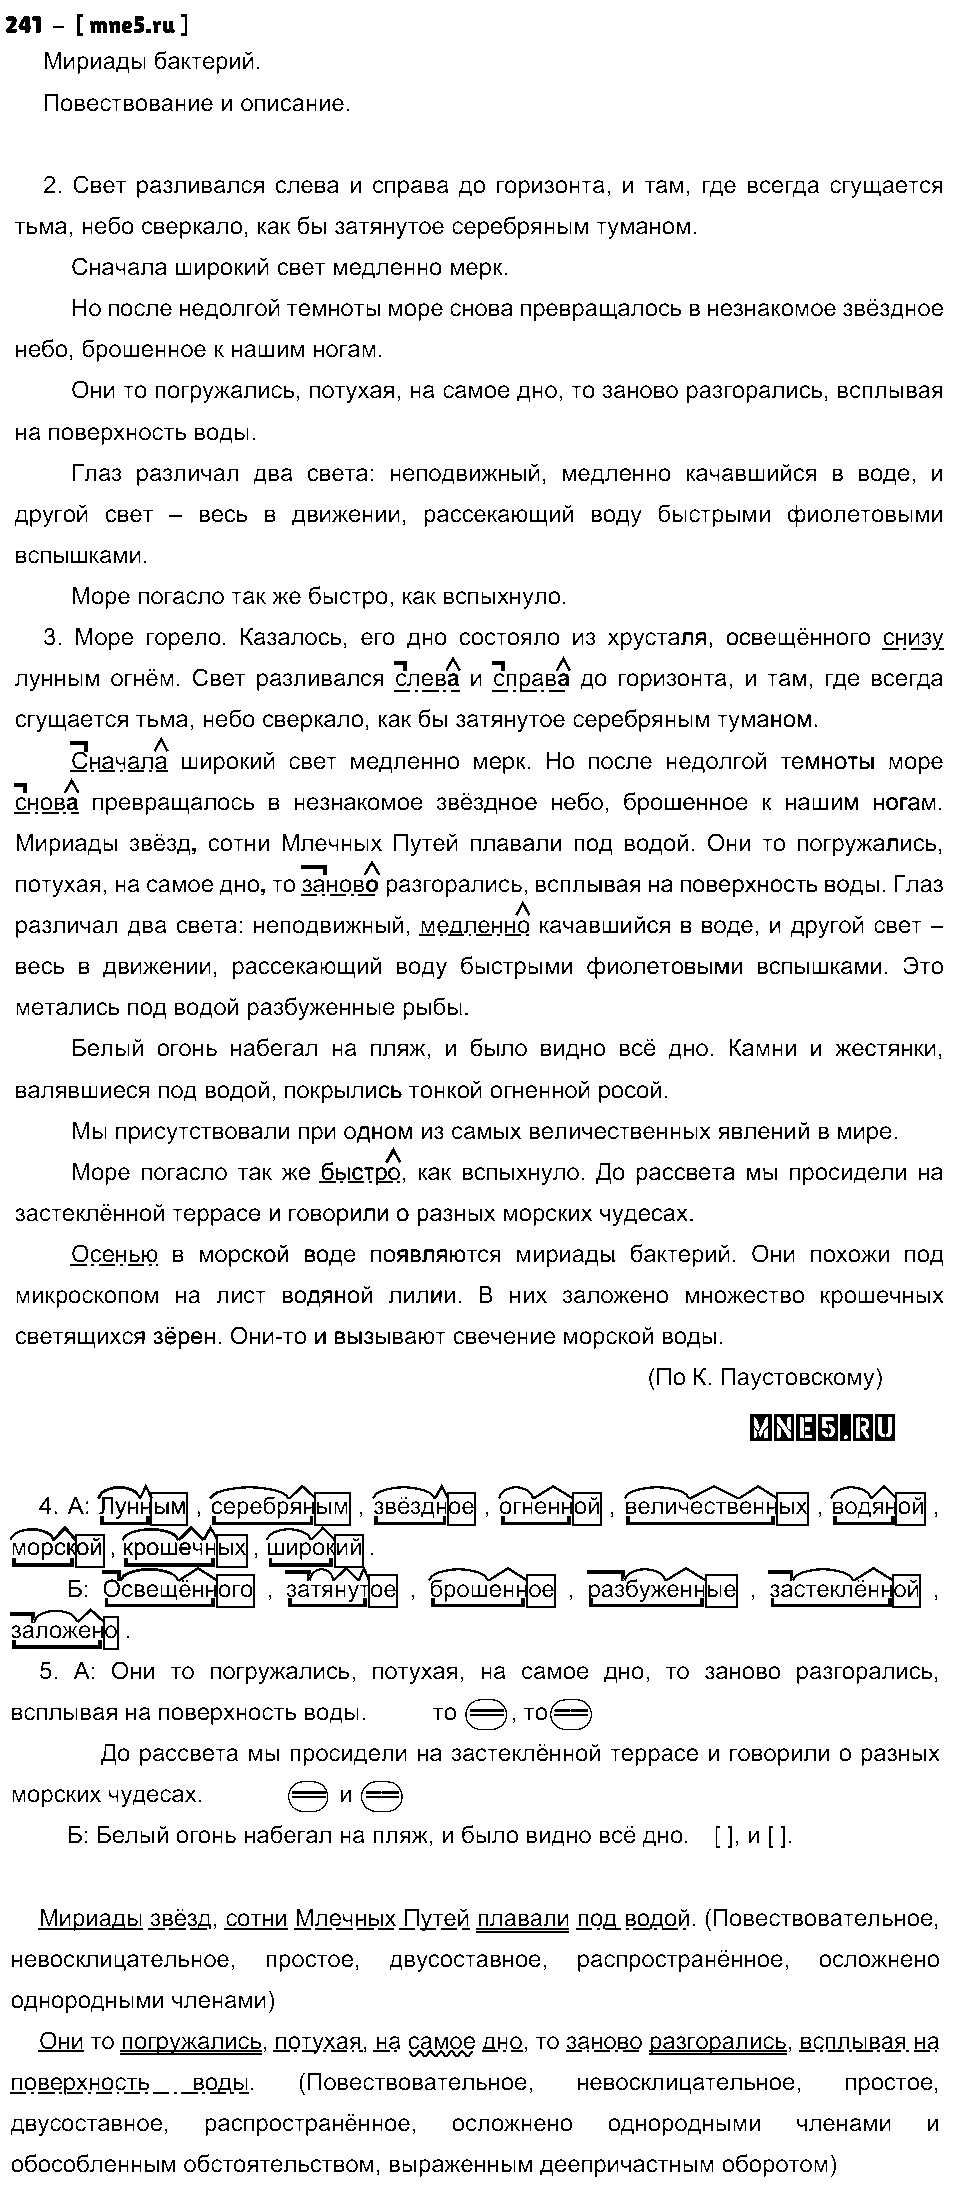 ГДЗ Русский язык 7 класс - 241